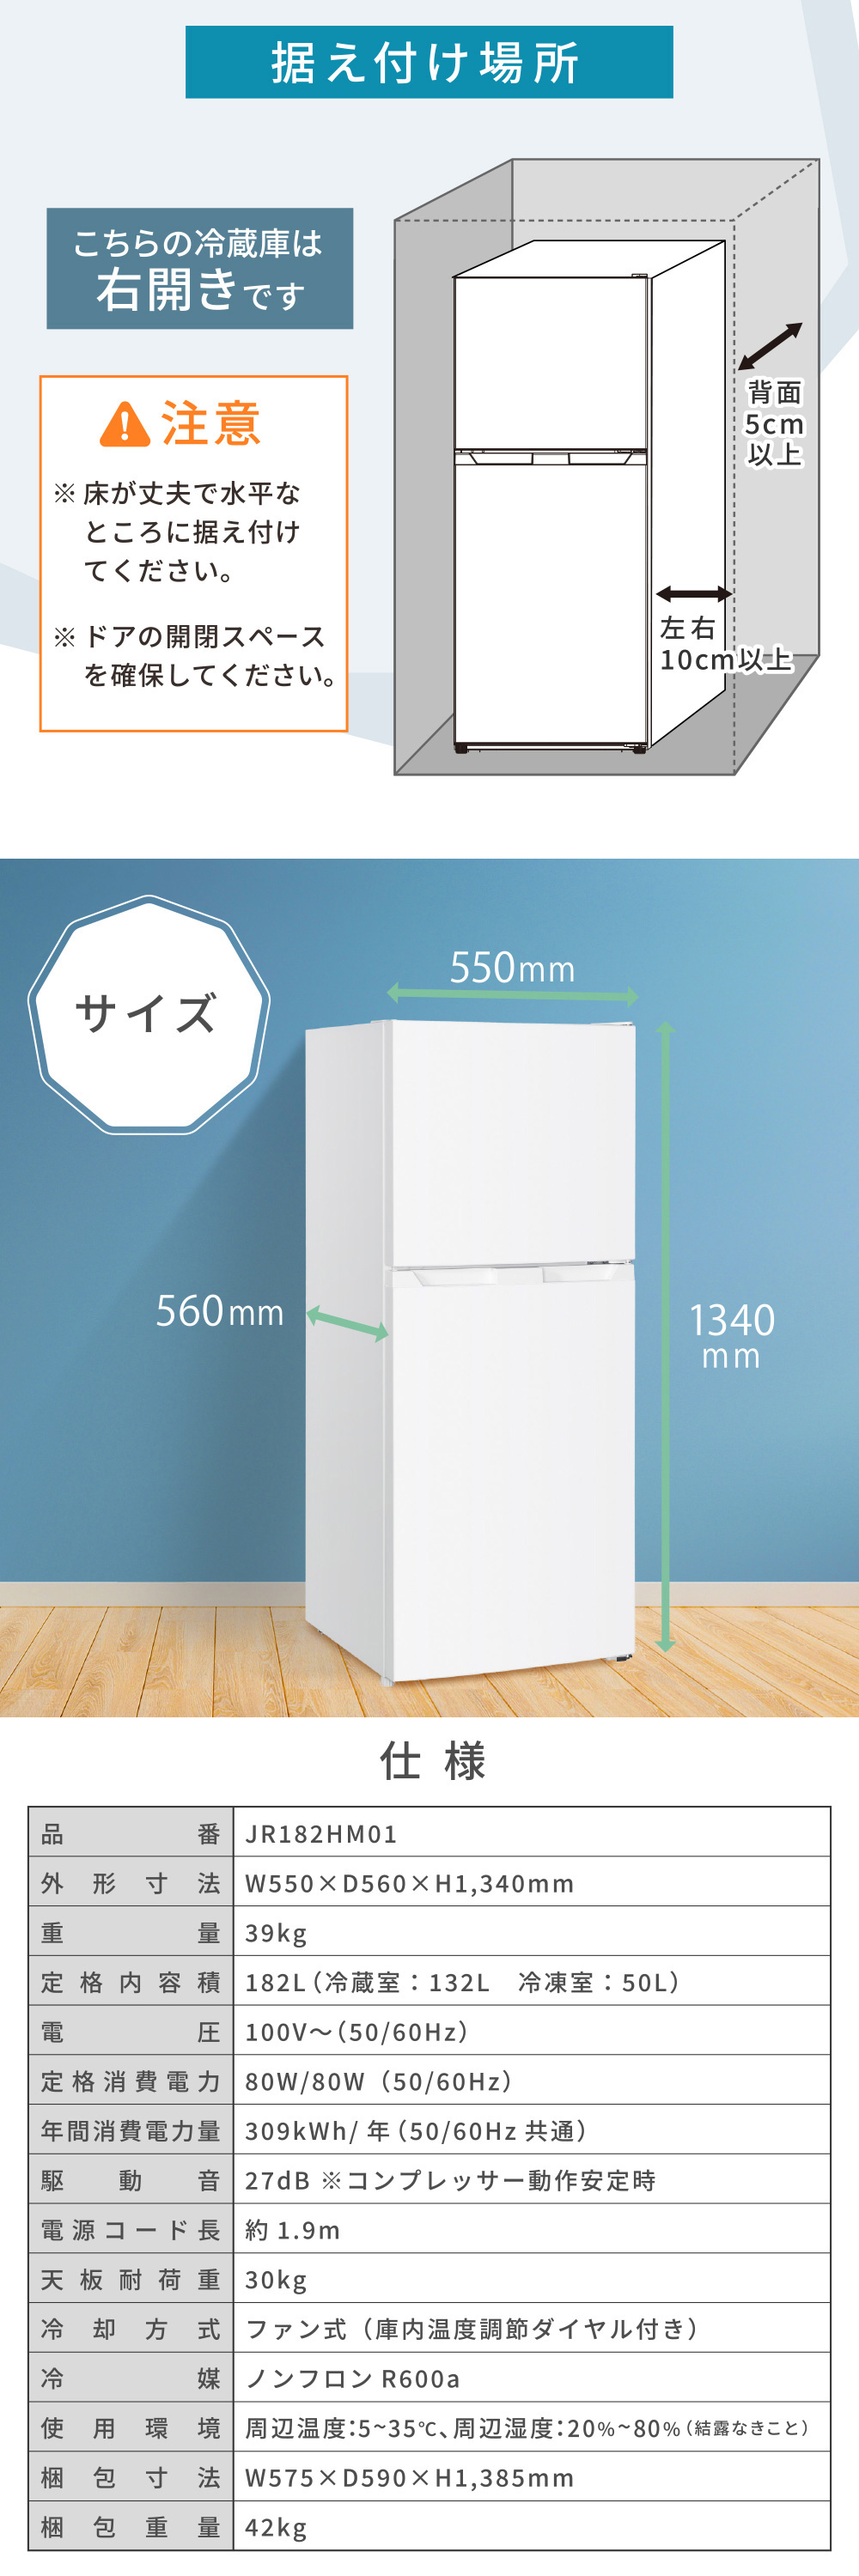 冷蔵庫 182L 2ドア 大容量 霜取り不要 自動霜取り ファン式 コンパクト 